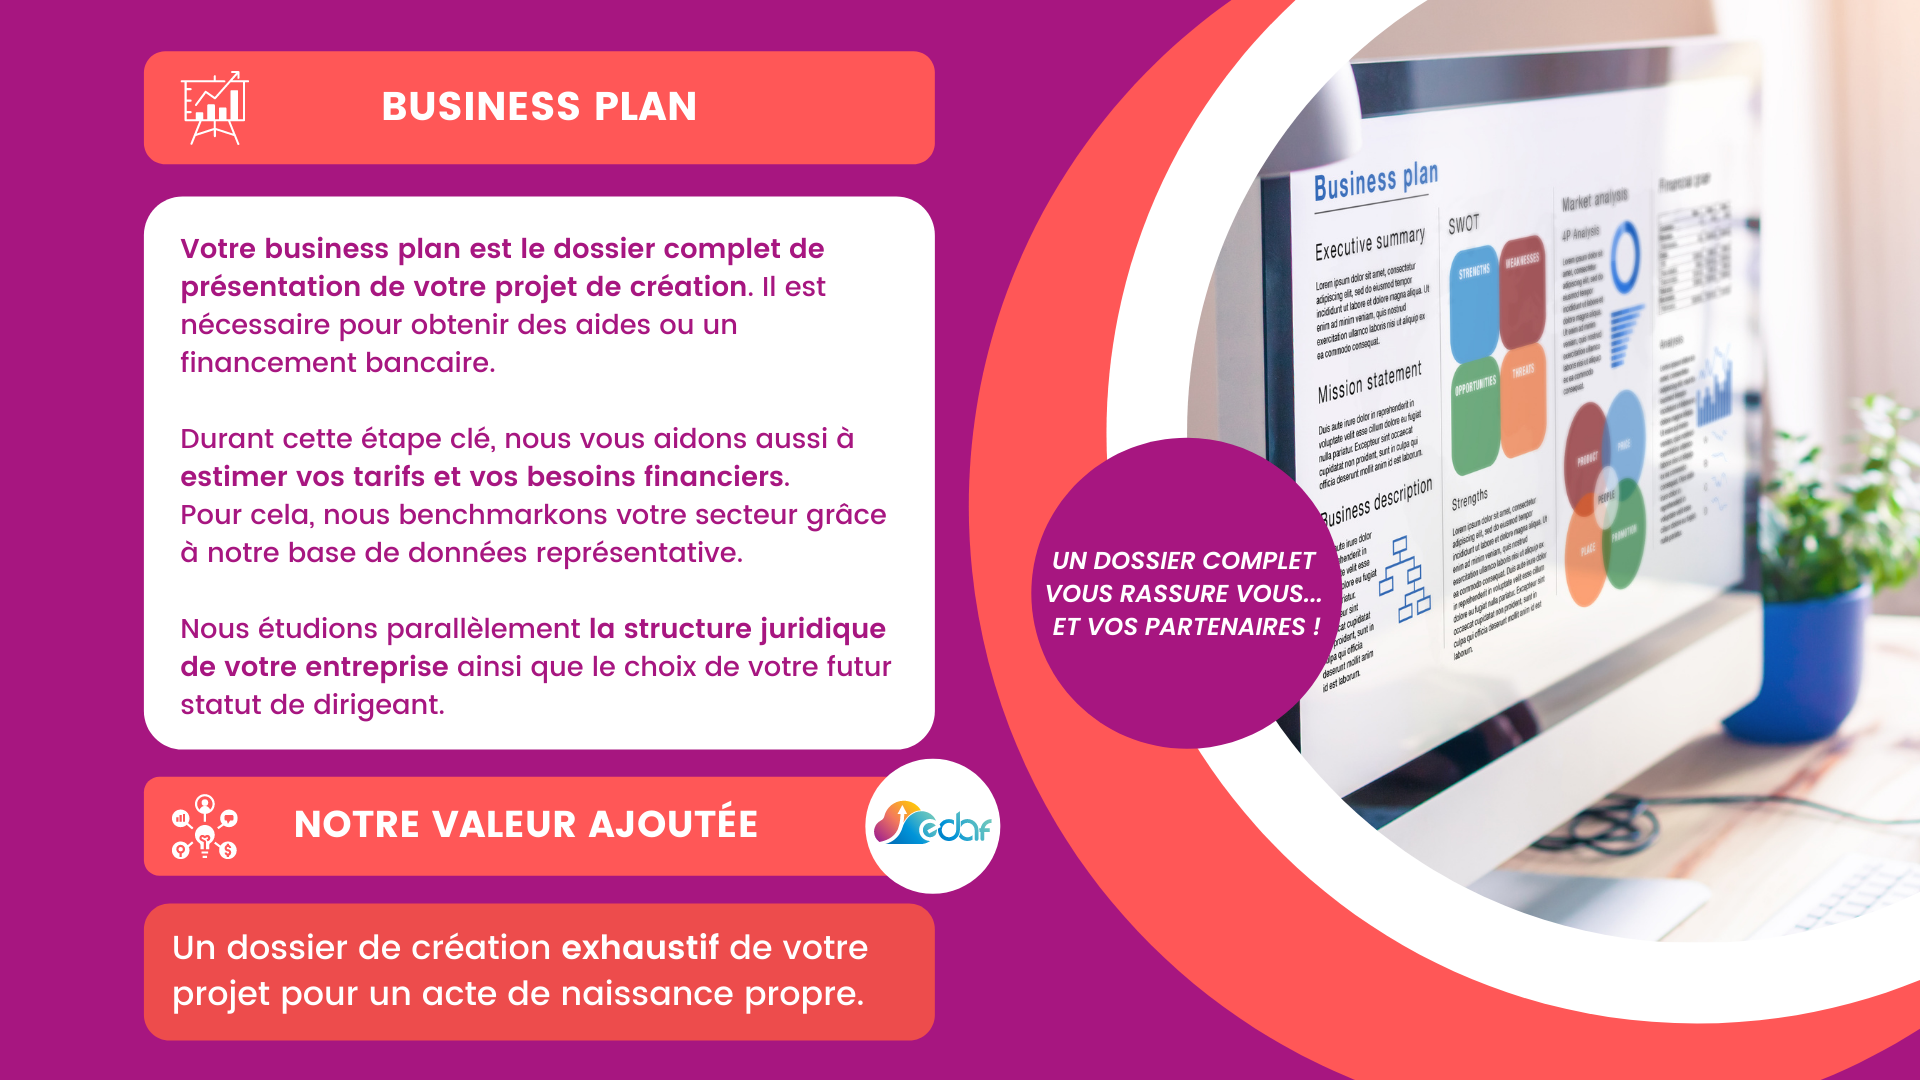 Slide expliquant le business plan du diaporama EDAF Création d'entreprise